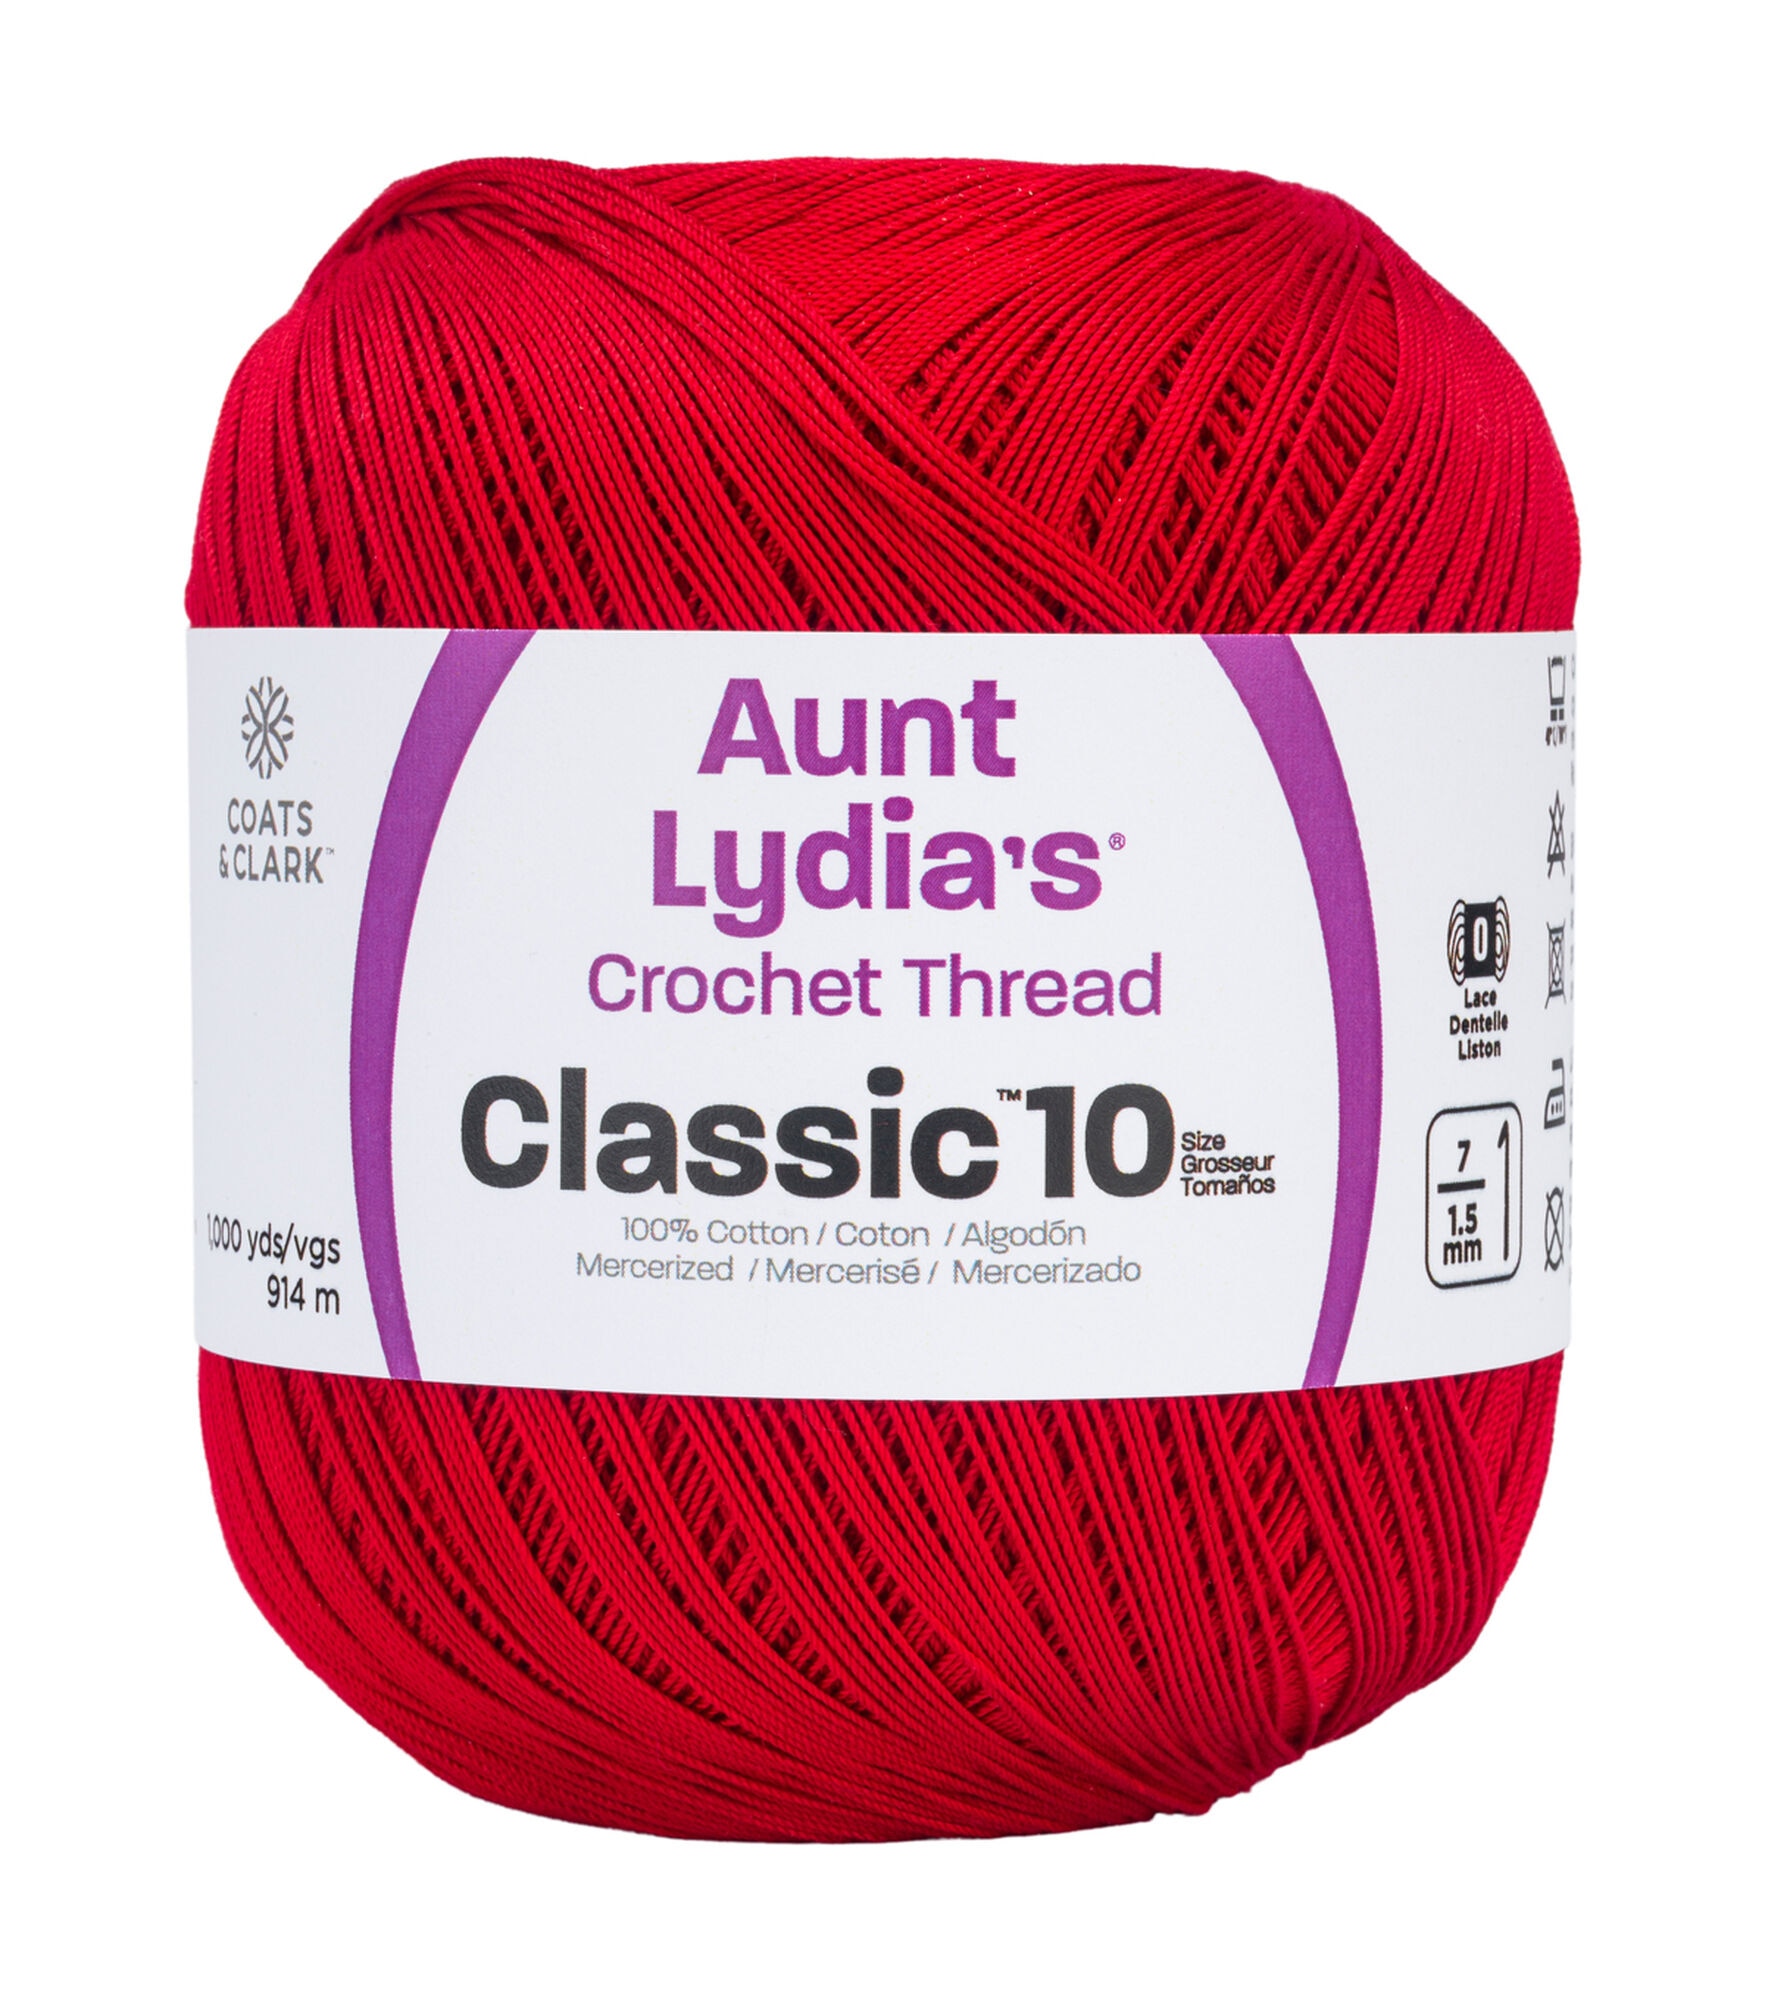 Fdit Lace Thread Colorful Hand Made DIY Knitting Crochet Stitch Thread Lace  Thread,Bulk Yarn,Tatting Thread 